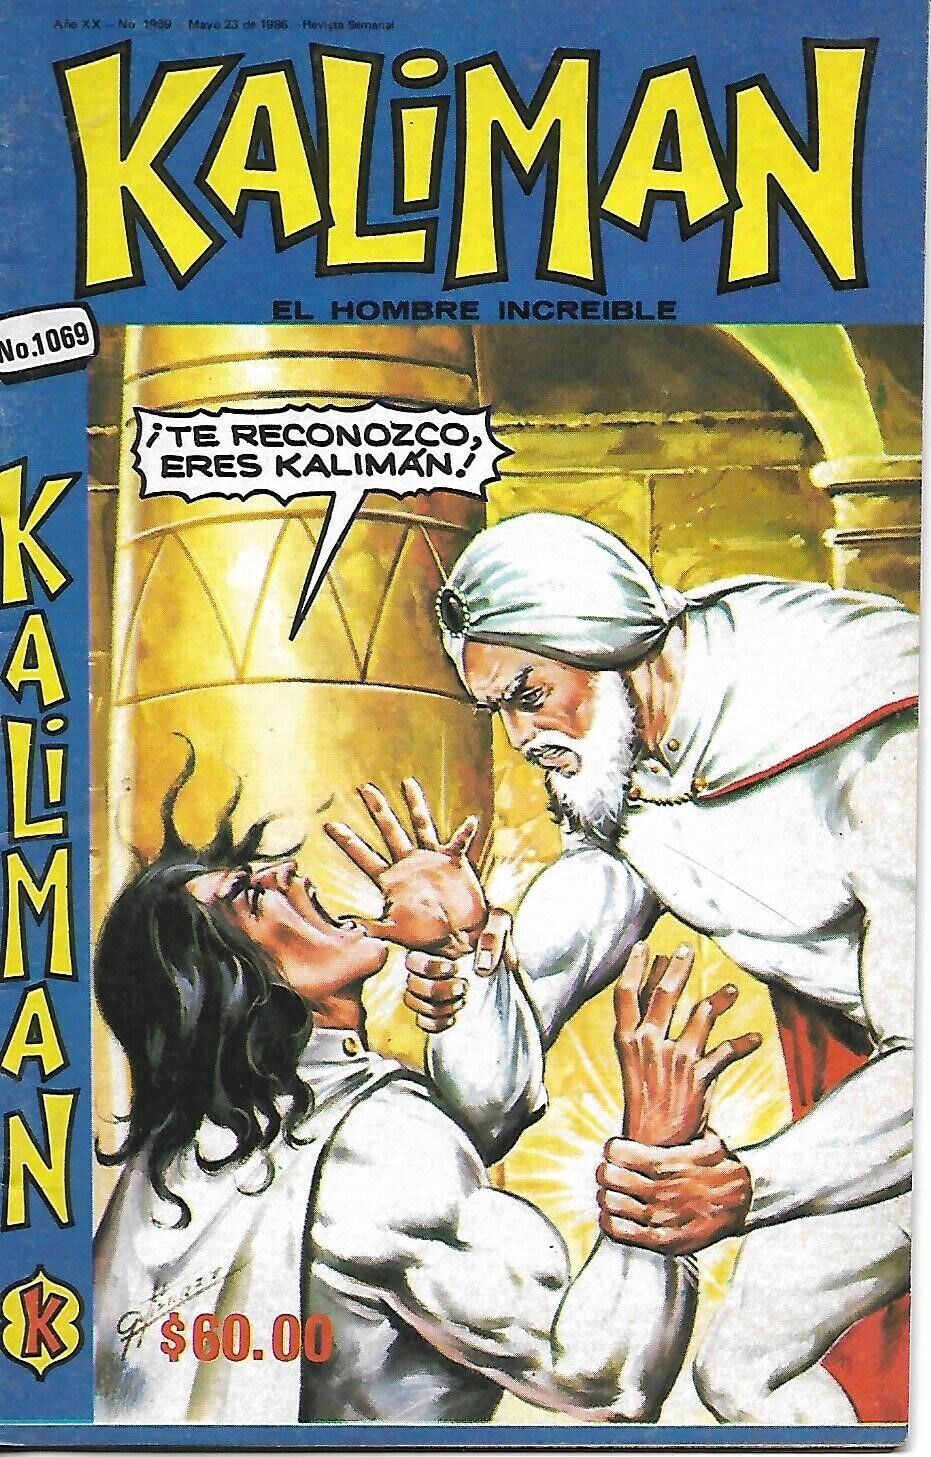 Kaliman El Hombre Increible #1069 - Mayo 23, 1986